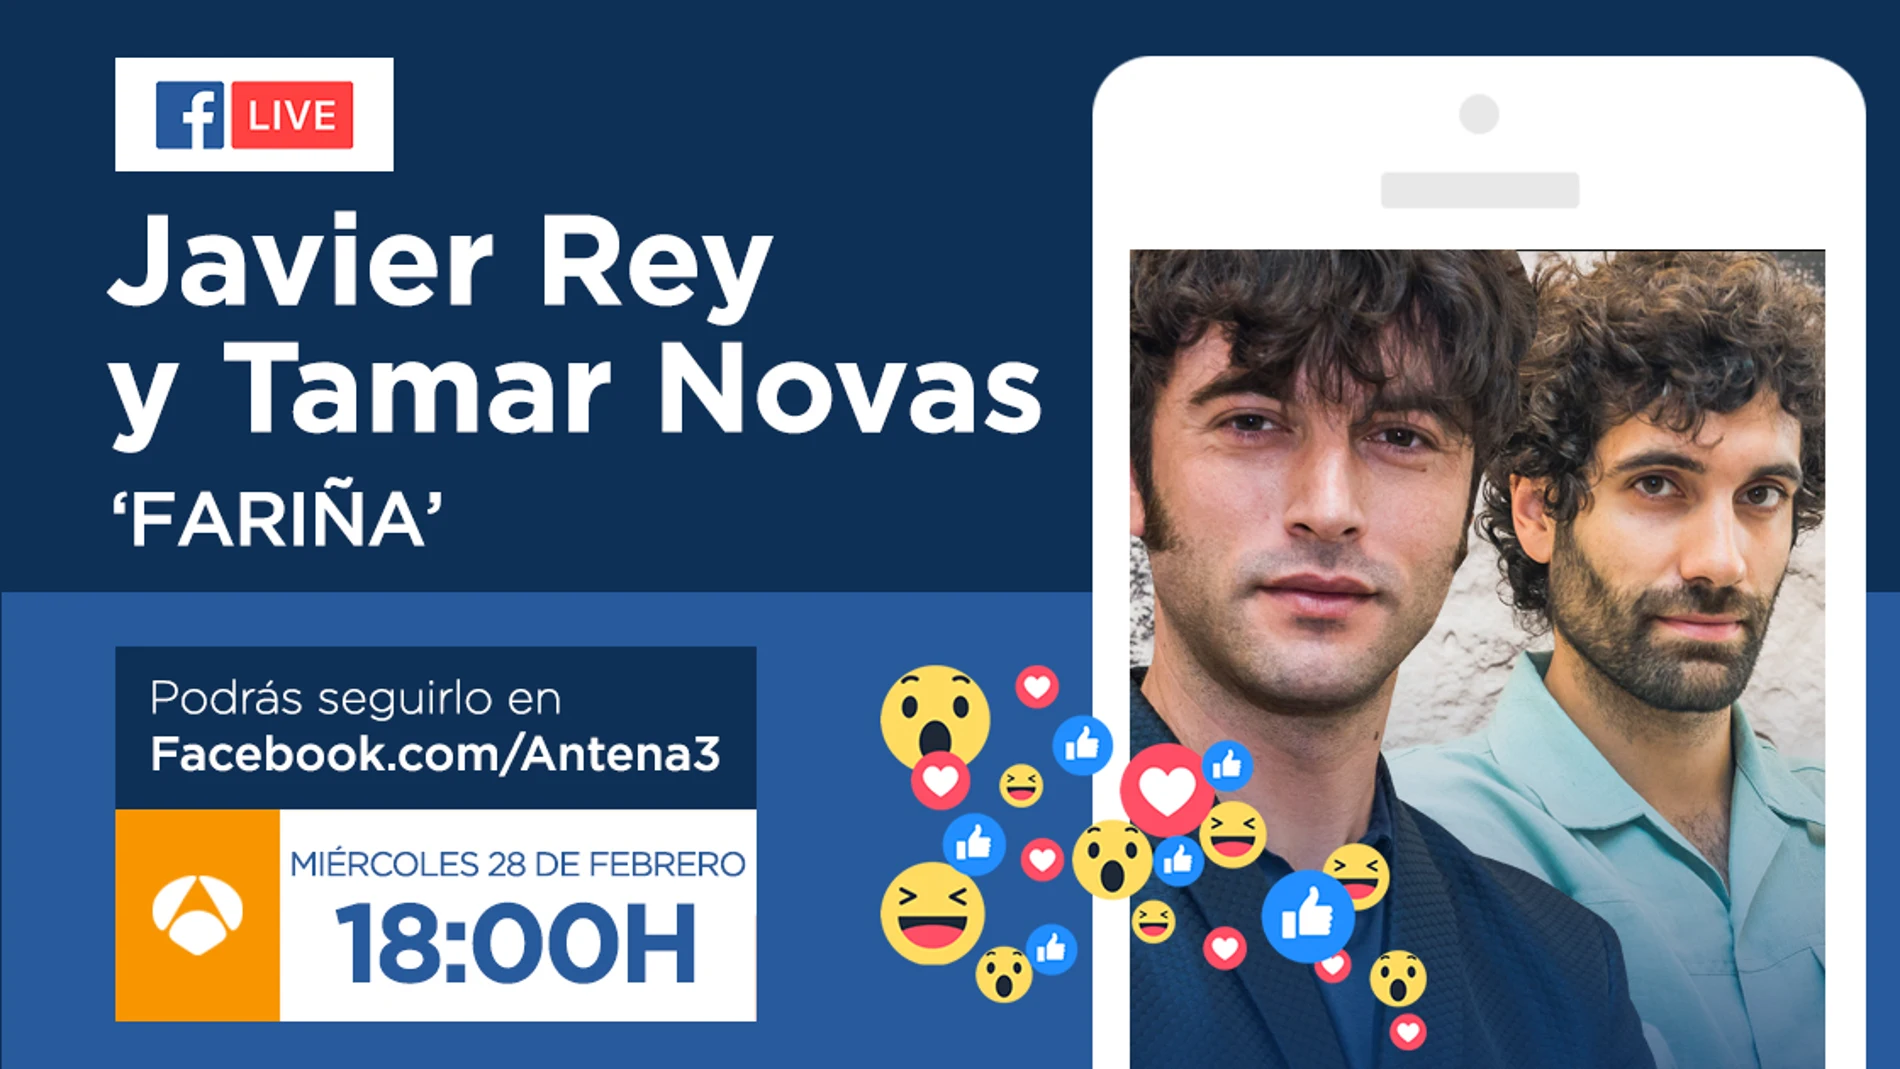 El miércoles, Javier Rey y Tamar Novas responderán a las preguntas de los fans de 'Fariña' a través de Facebook Live